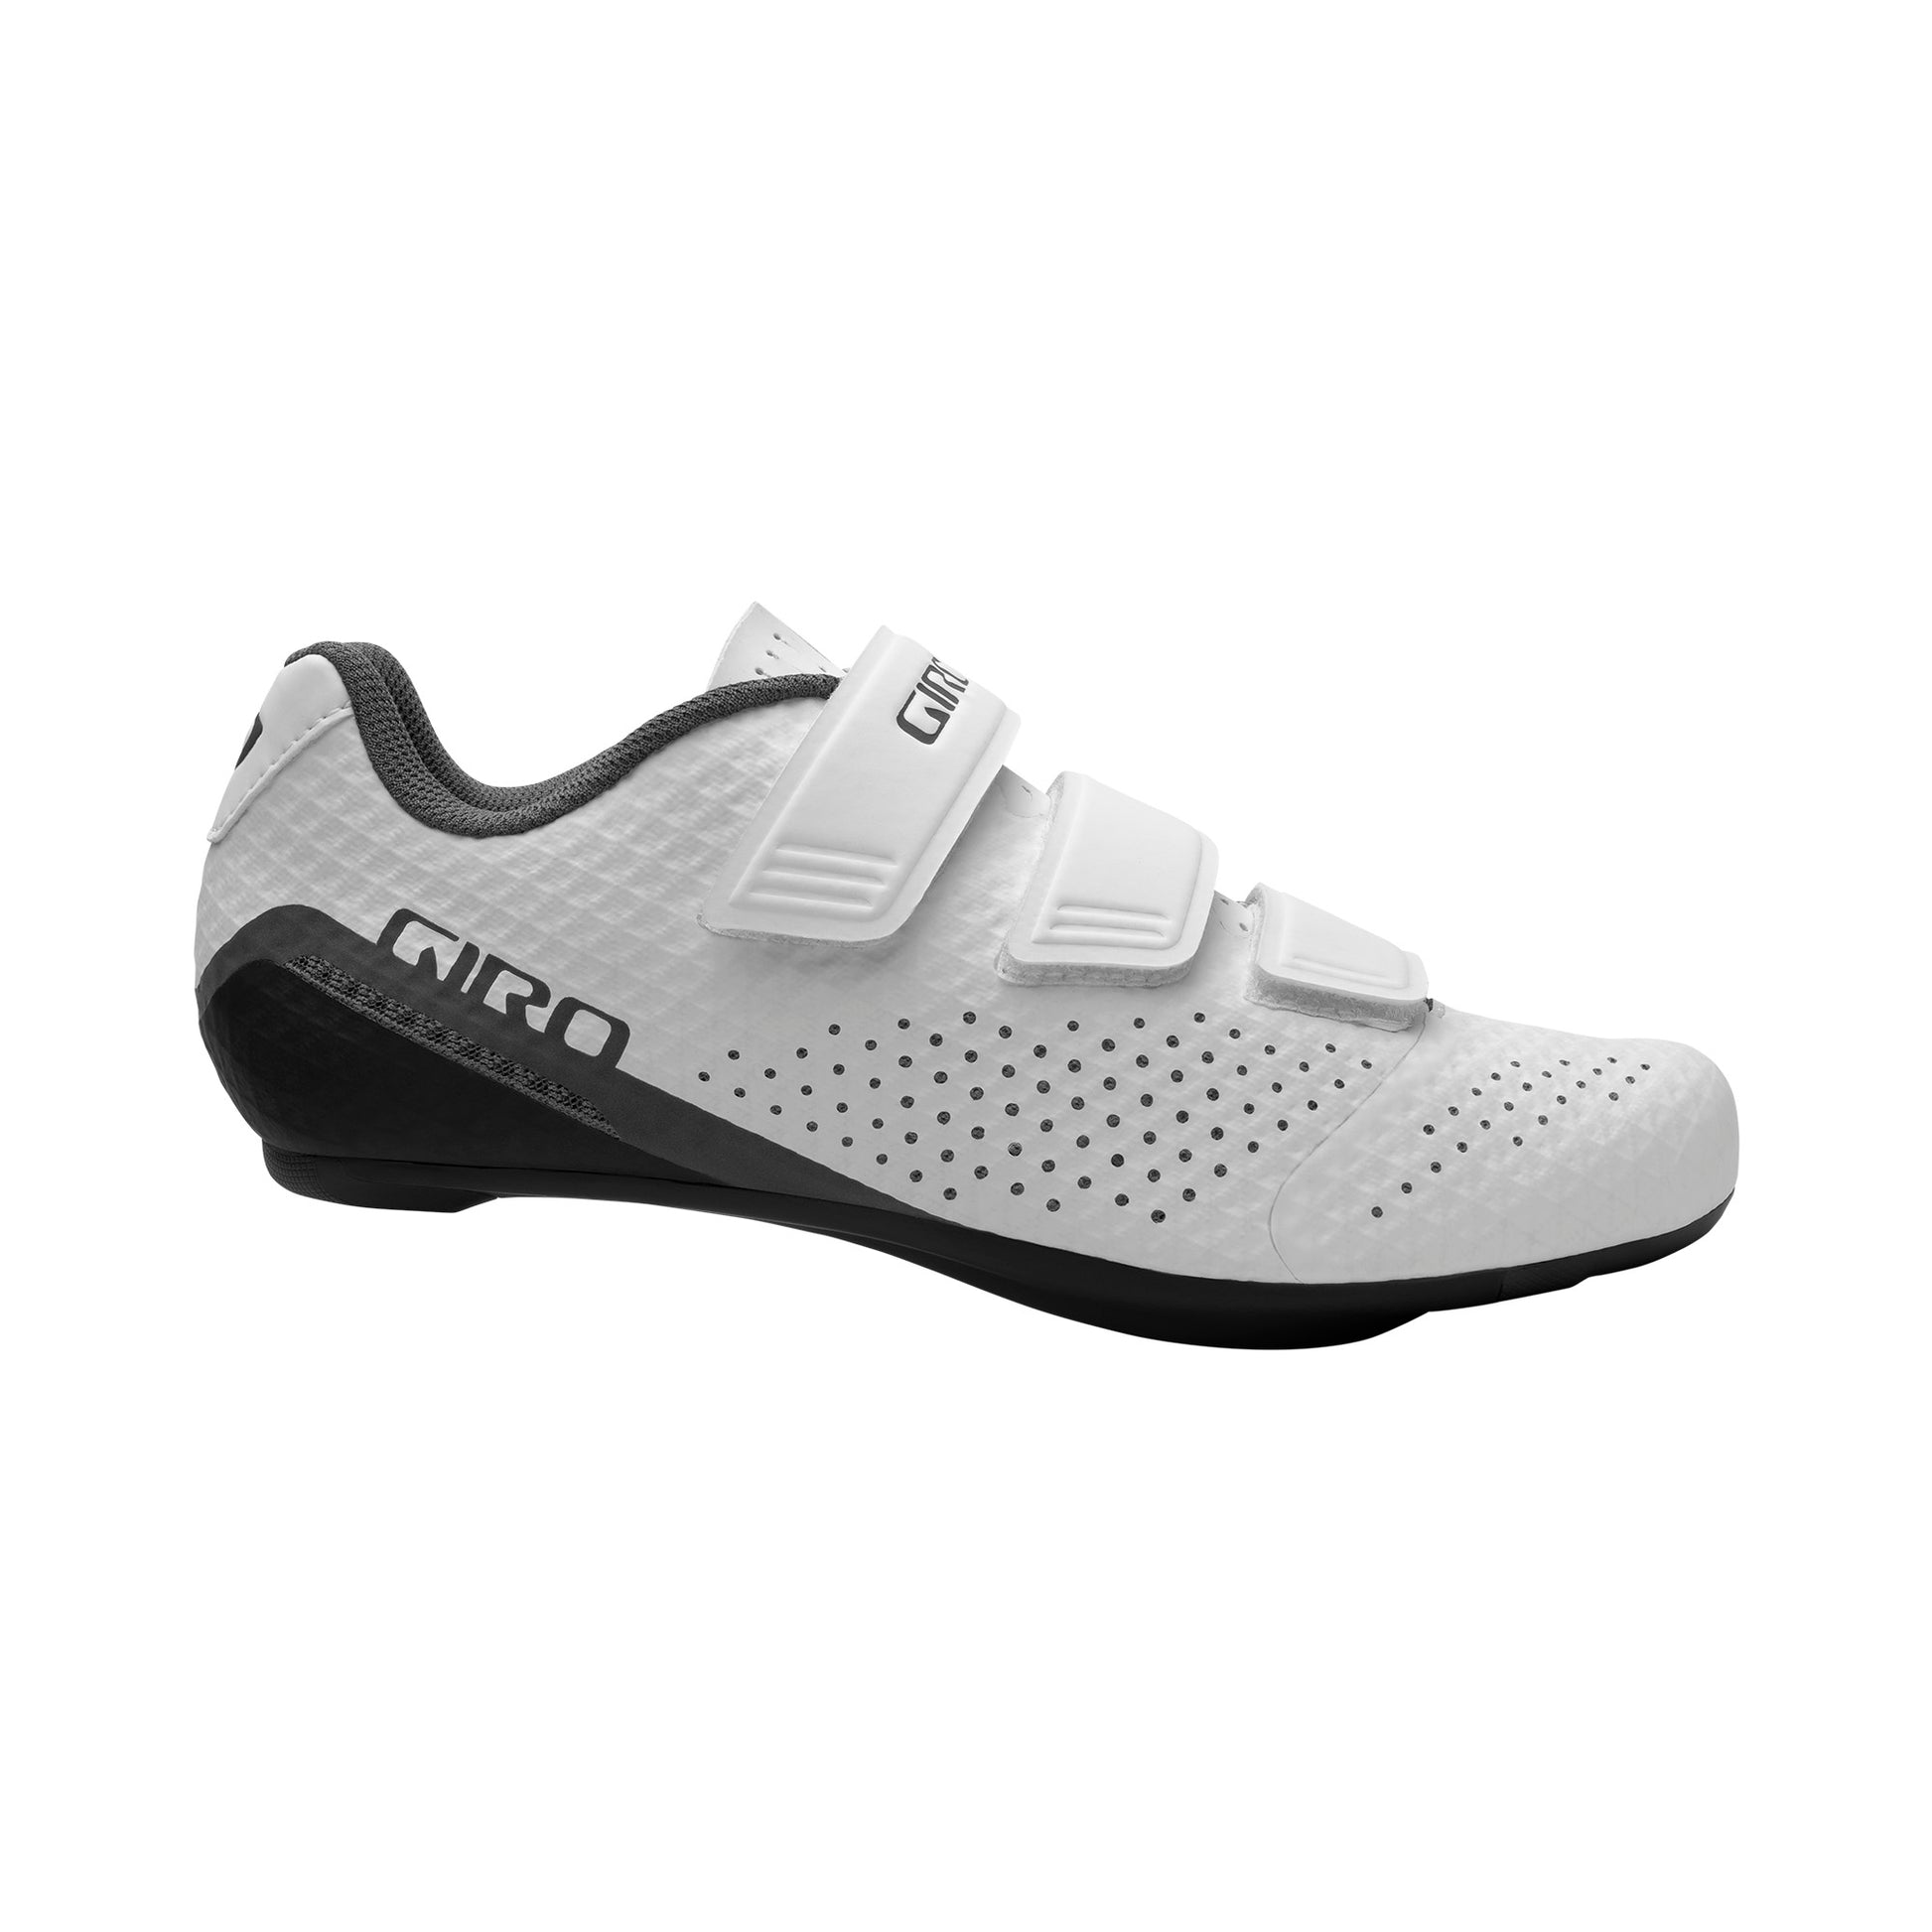 Giro Women's Stylus Shoe - OpenBox White Bike Shoes